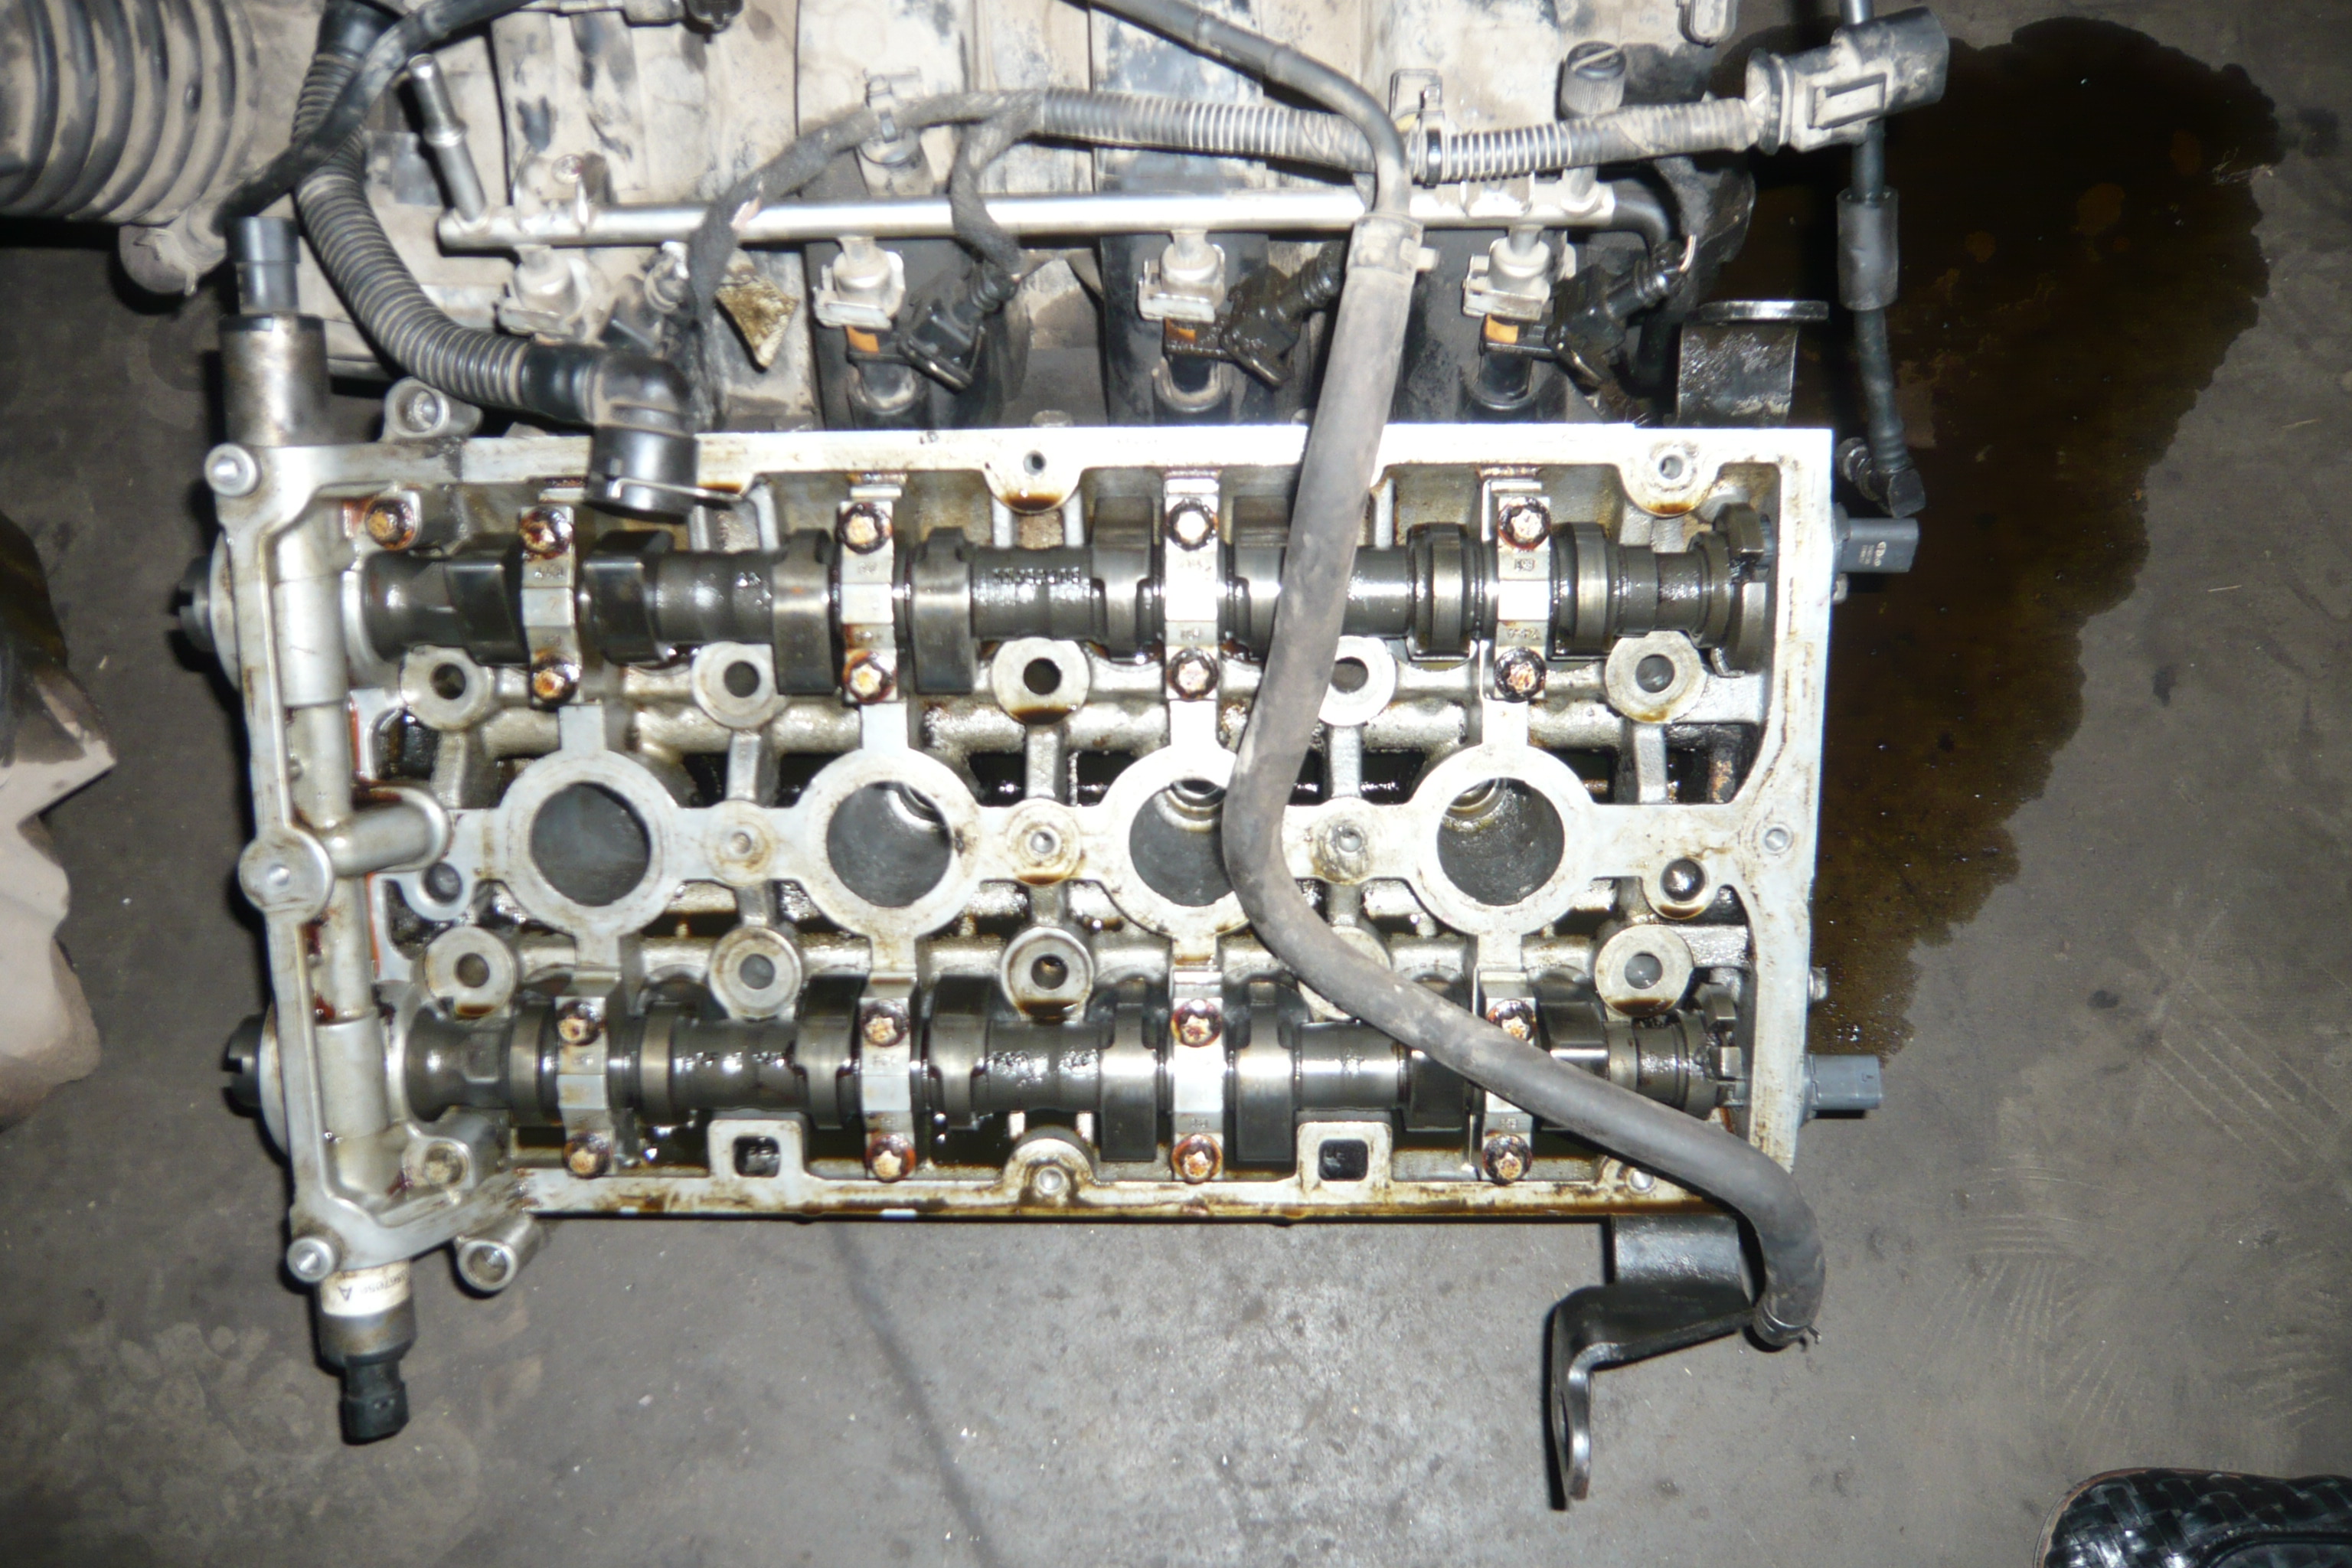 Переборка двигателя Шевроле Лачетти 1.6. Капитальный ремонт двигателя Лачетти 1.6 цена.